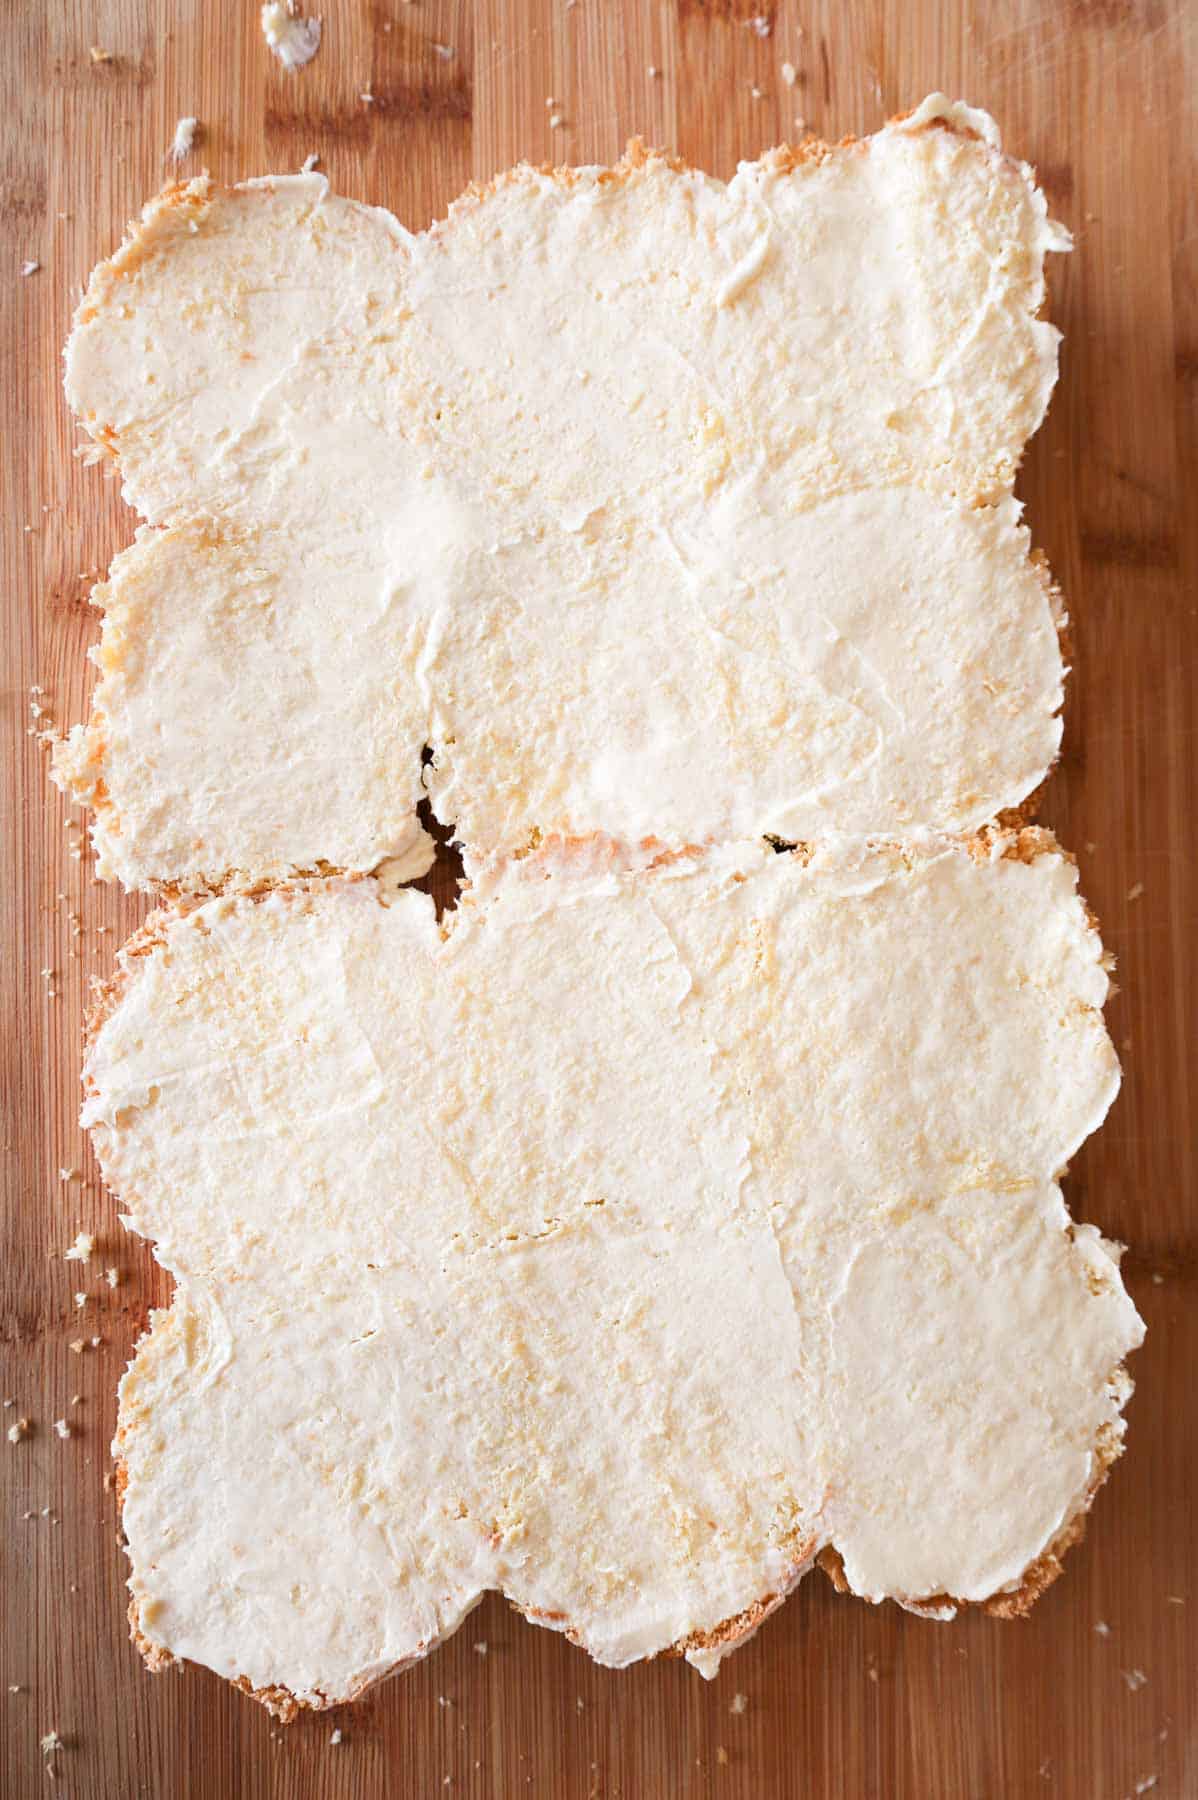 margarine spread on cut dinner rolls on a cutting board